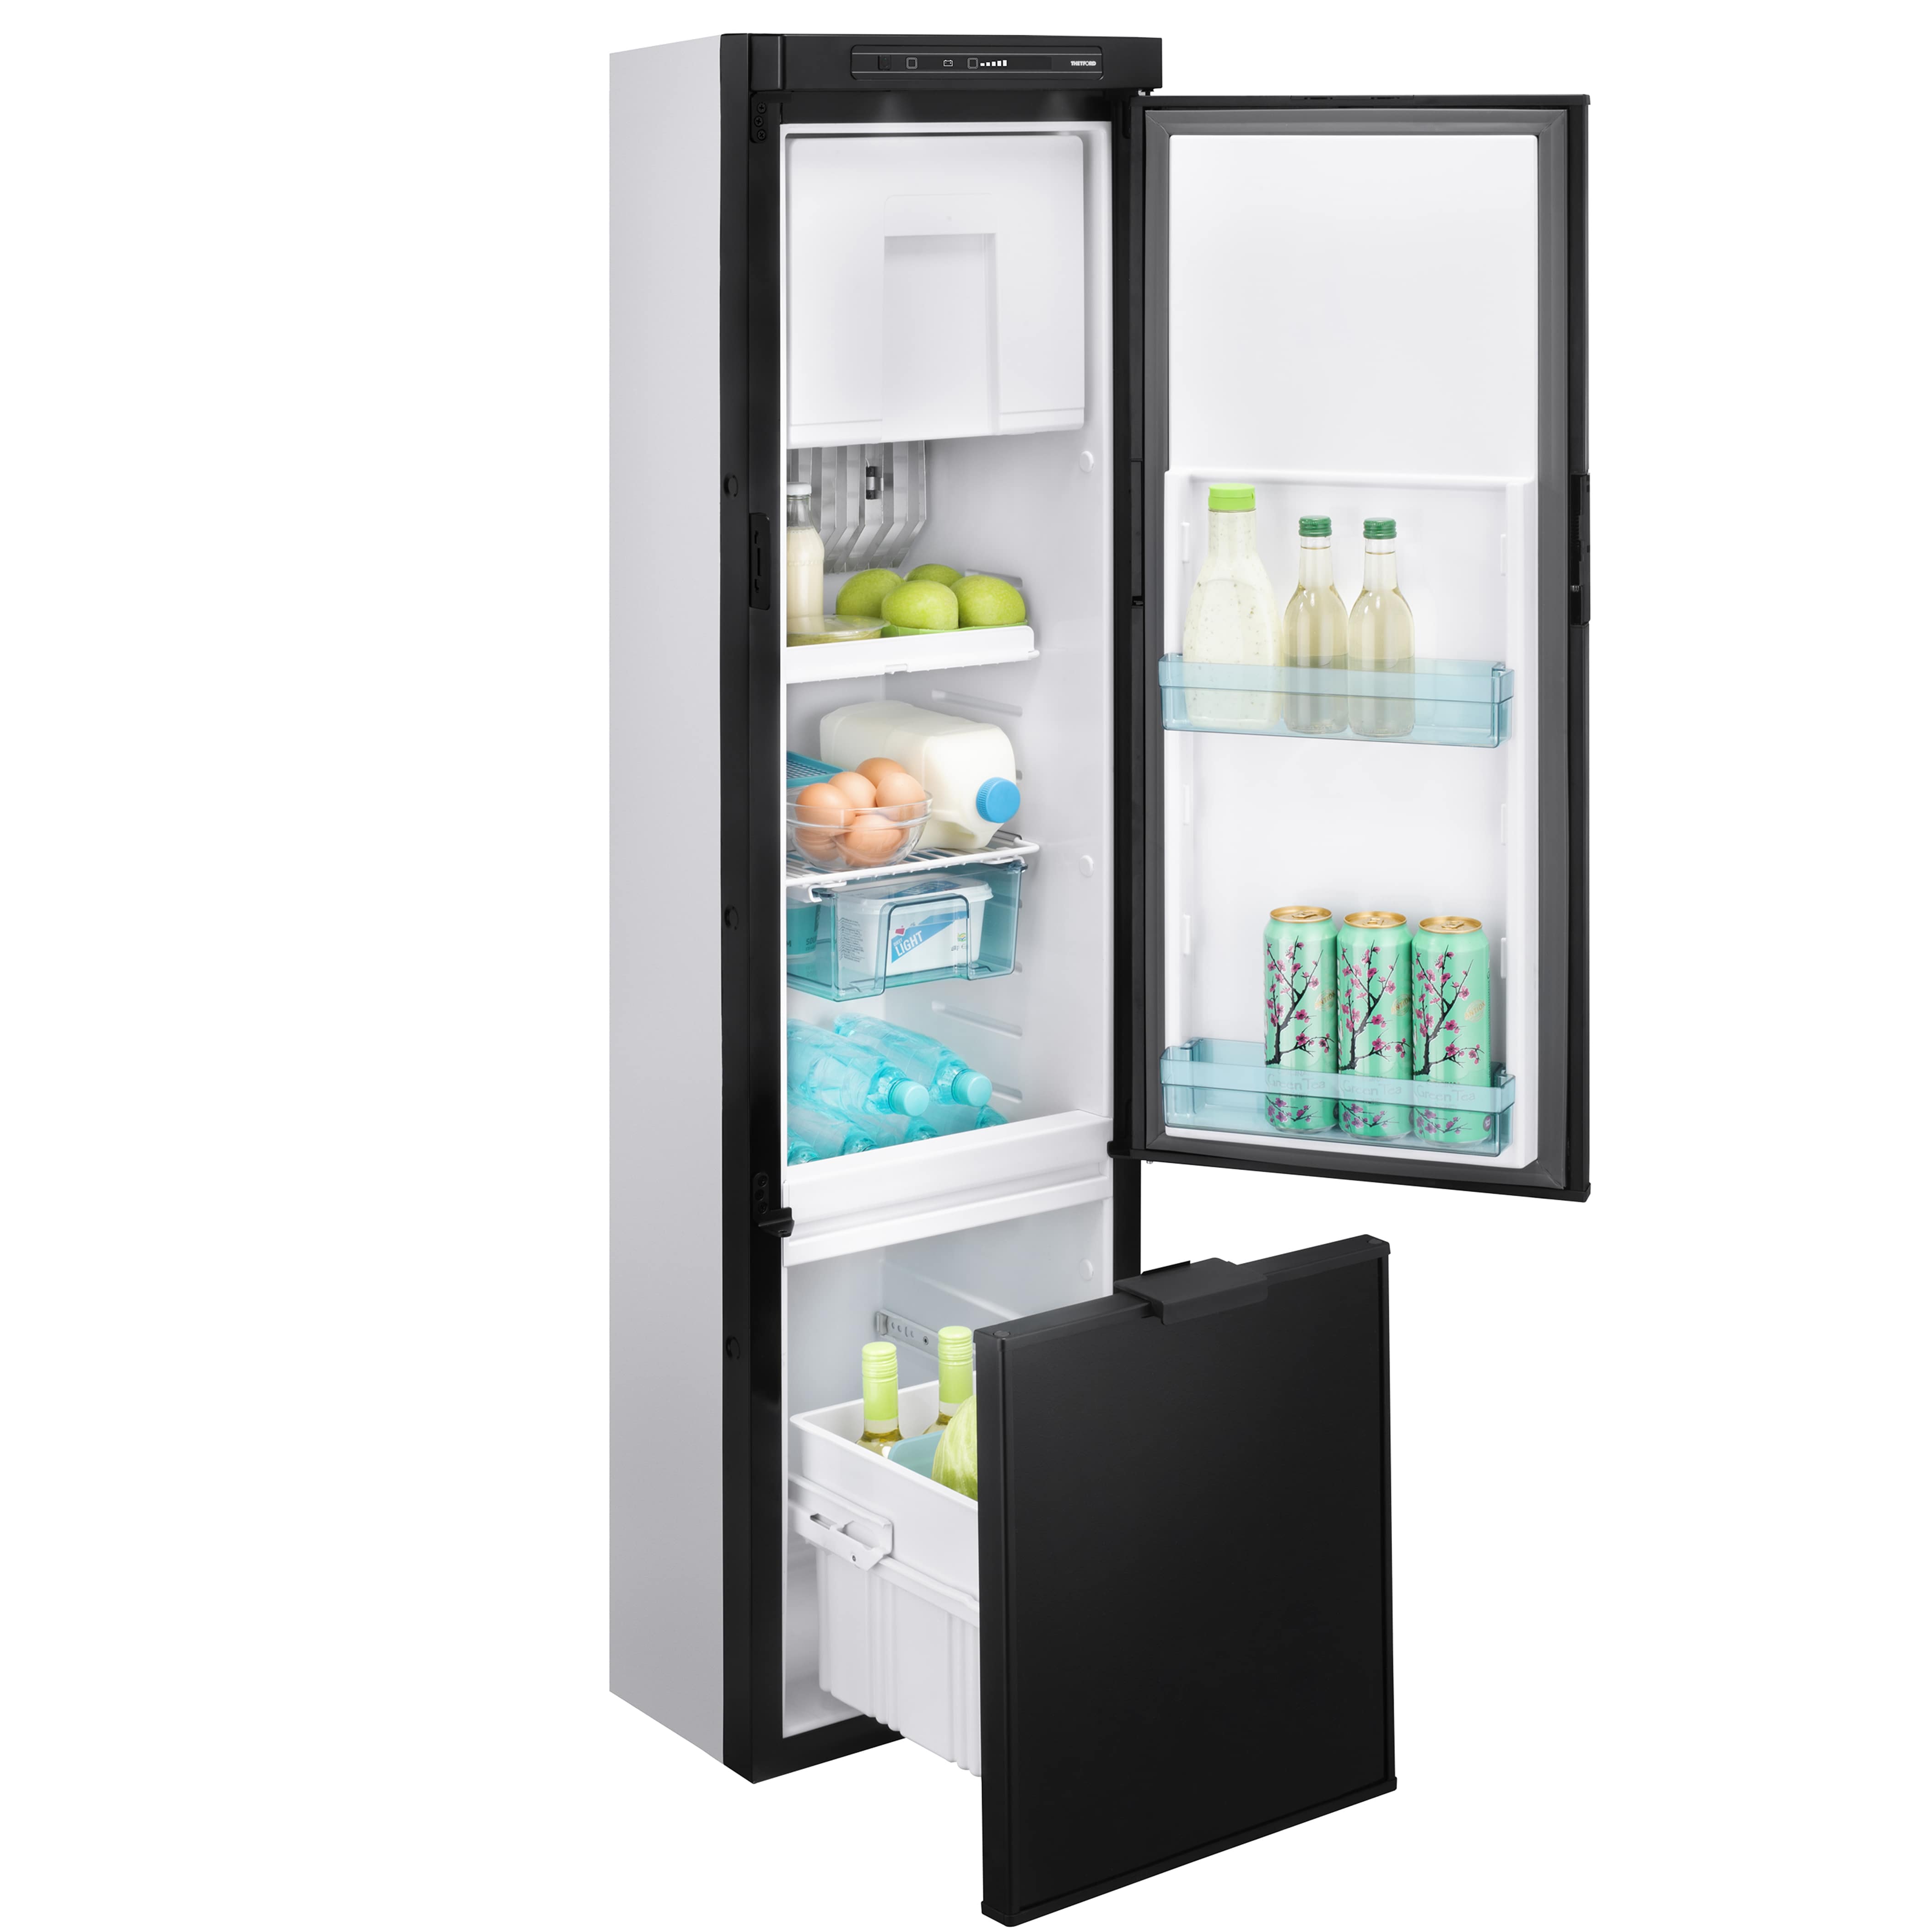 Узкий холодильник 50 купить. Узкий холодильник 40 см двухкамерный Samsung. Холодильник не глубокий 45 см и высокий. Холодильник глубина 45. Холодильник узкий 45-50см ширина.